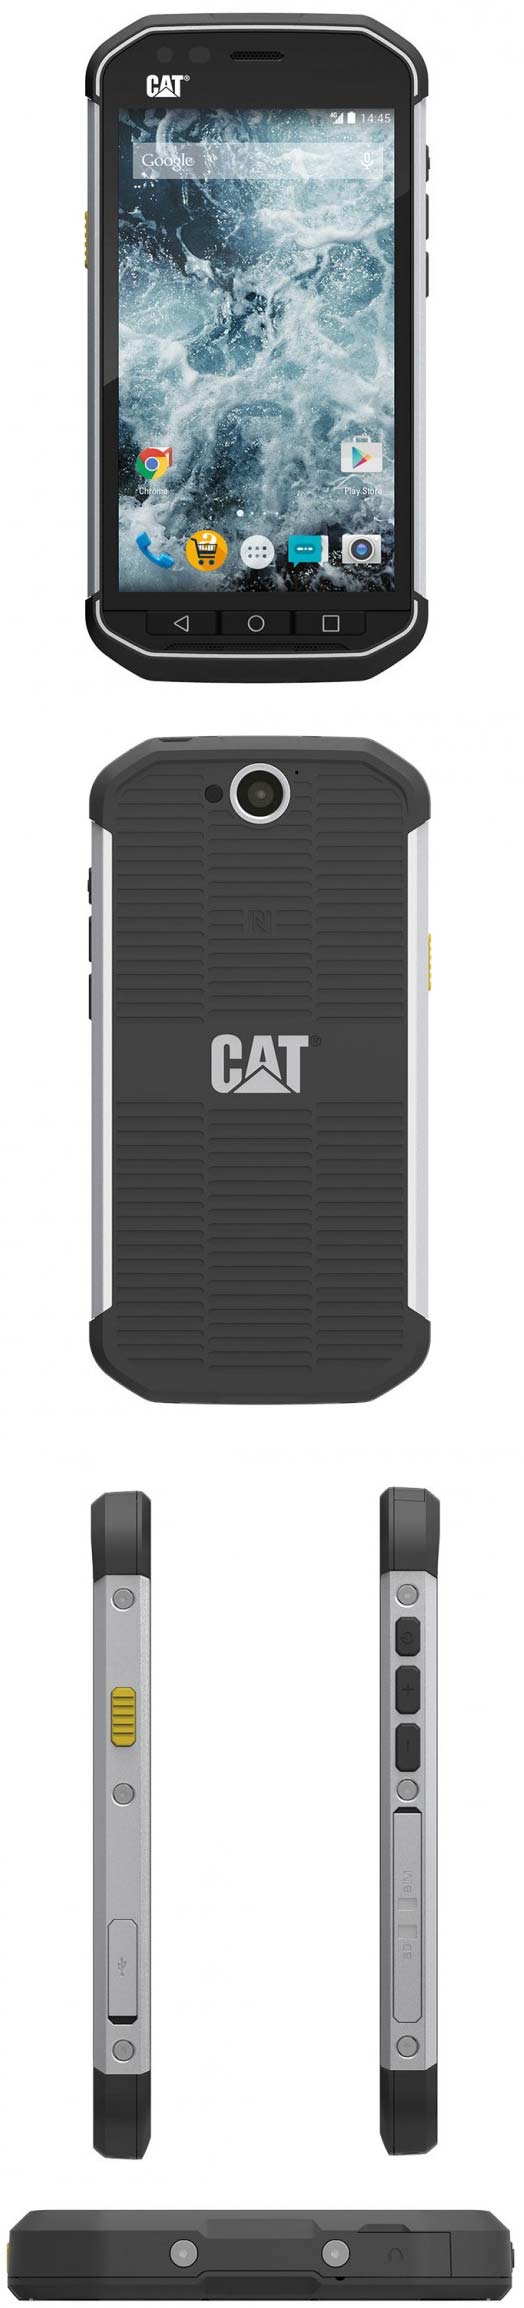 Защищённый смартфон Cat S40